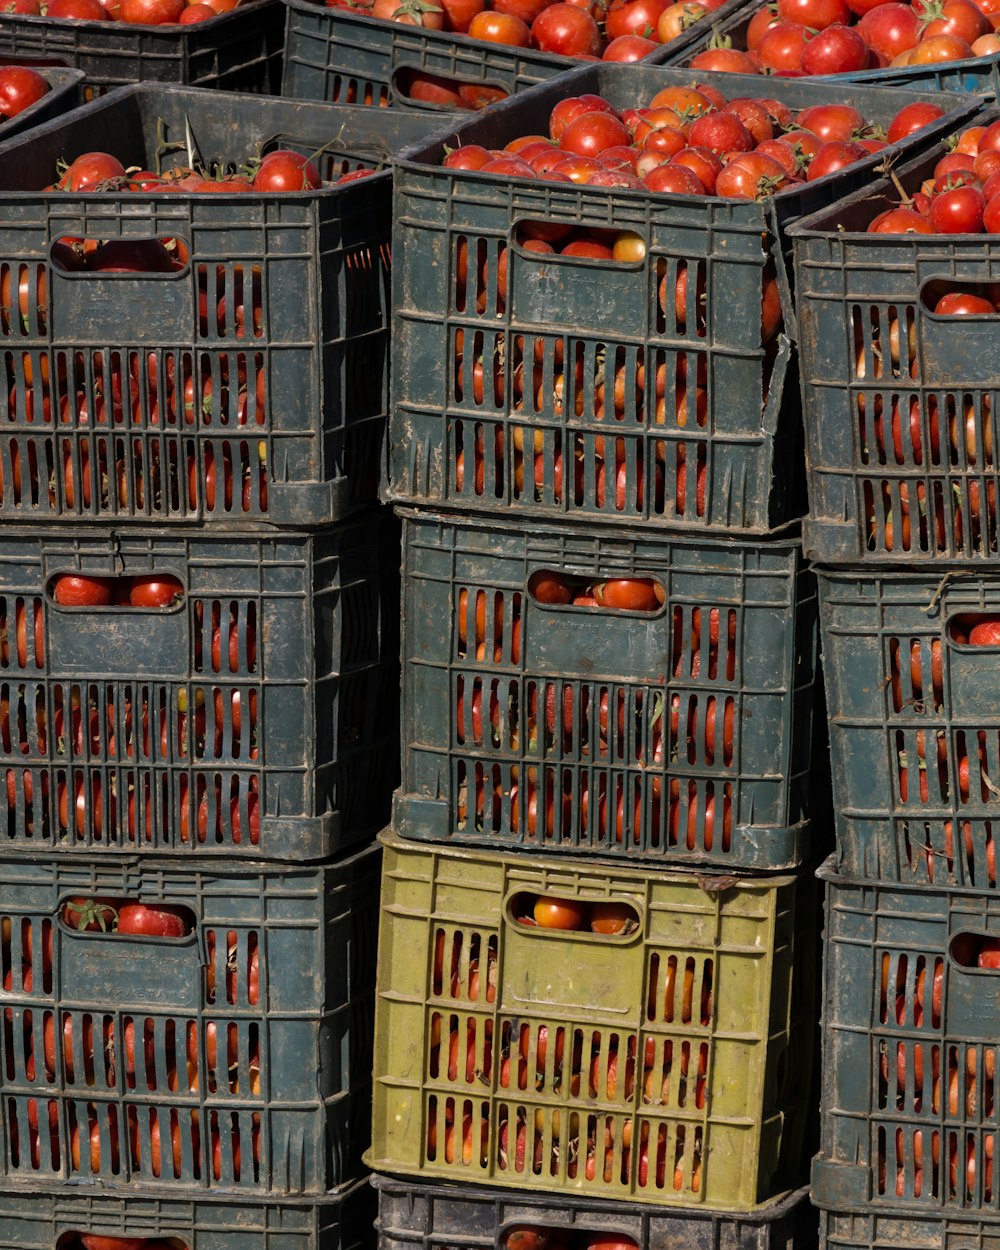 un tas de caisses remplies de beaucoup de pommes rouges